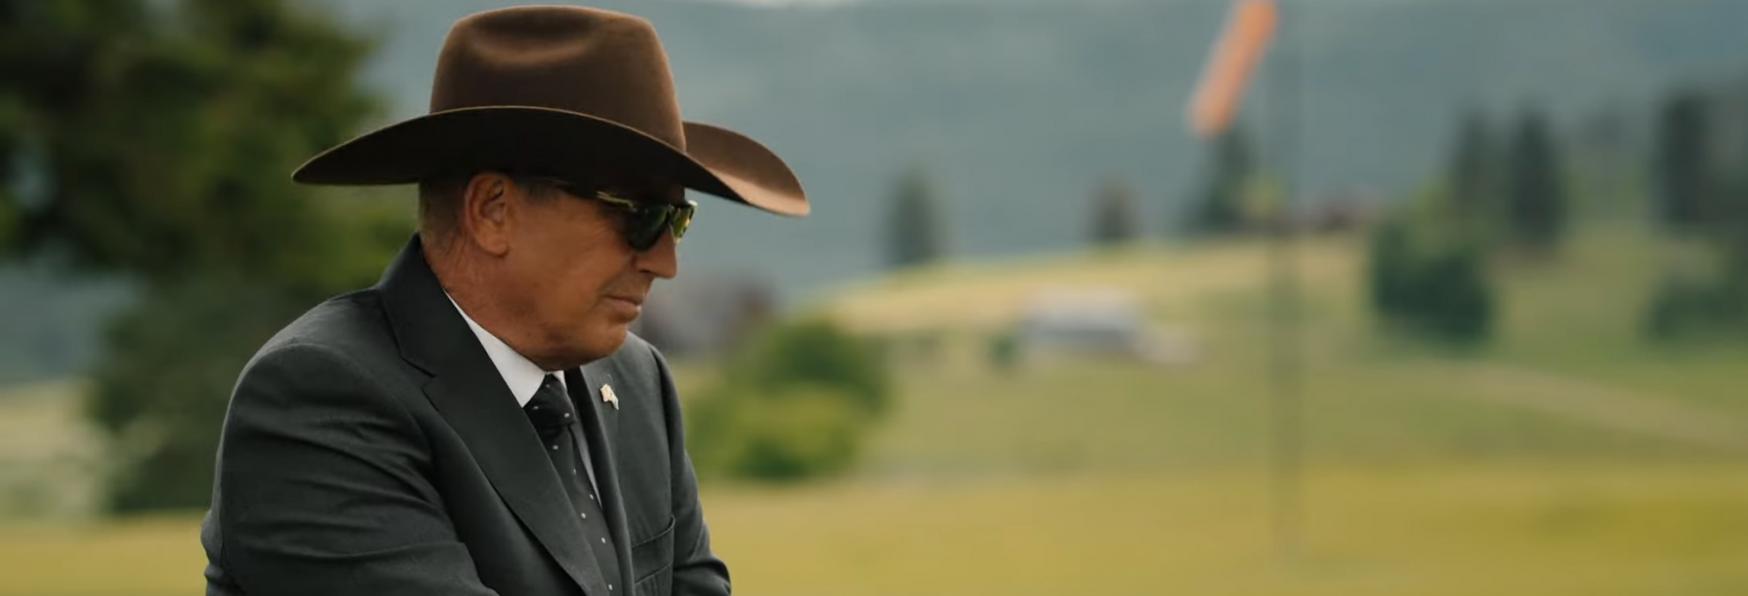 Yellowstone 5: Paramount rilascia il Trailer Ufficiale della Prossima Stagione